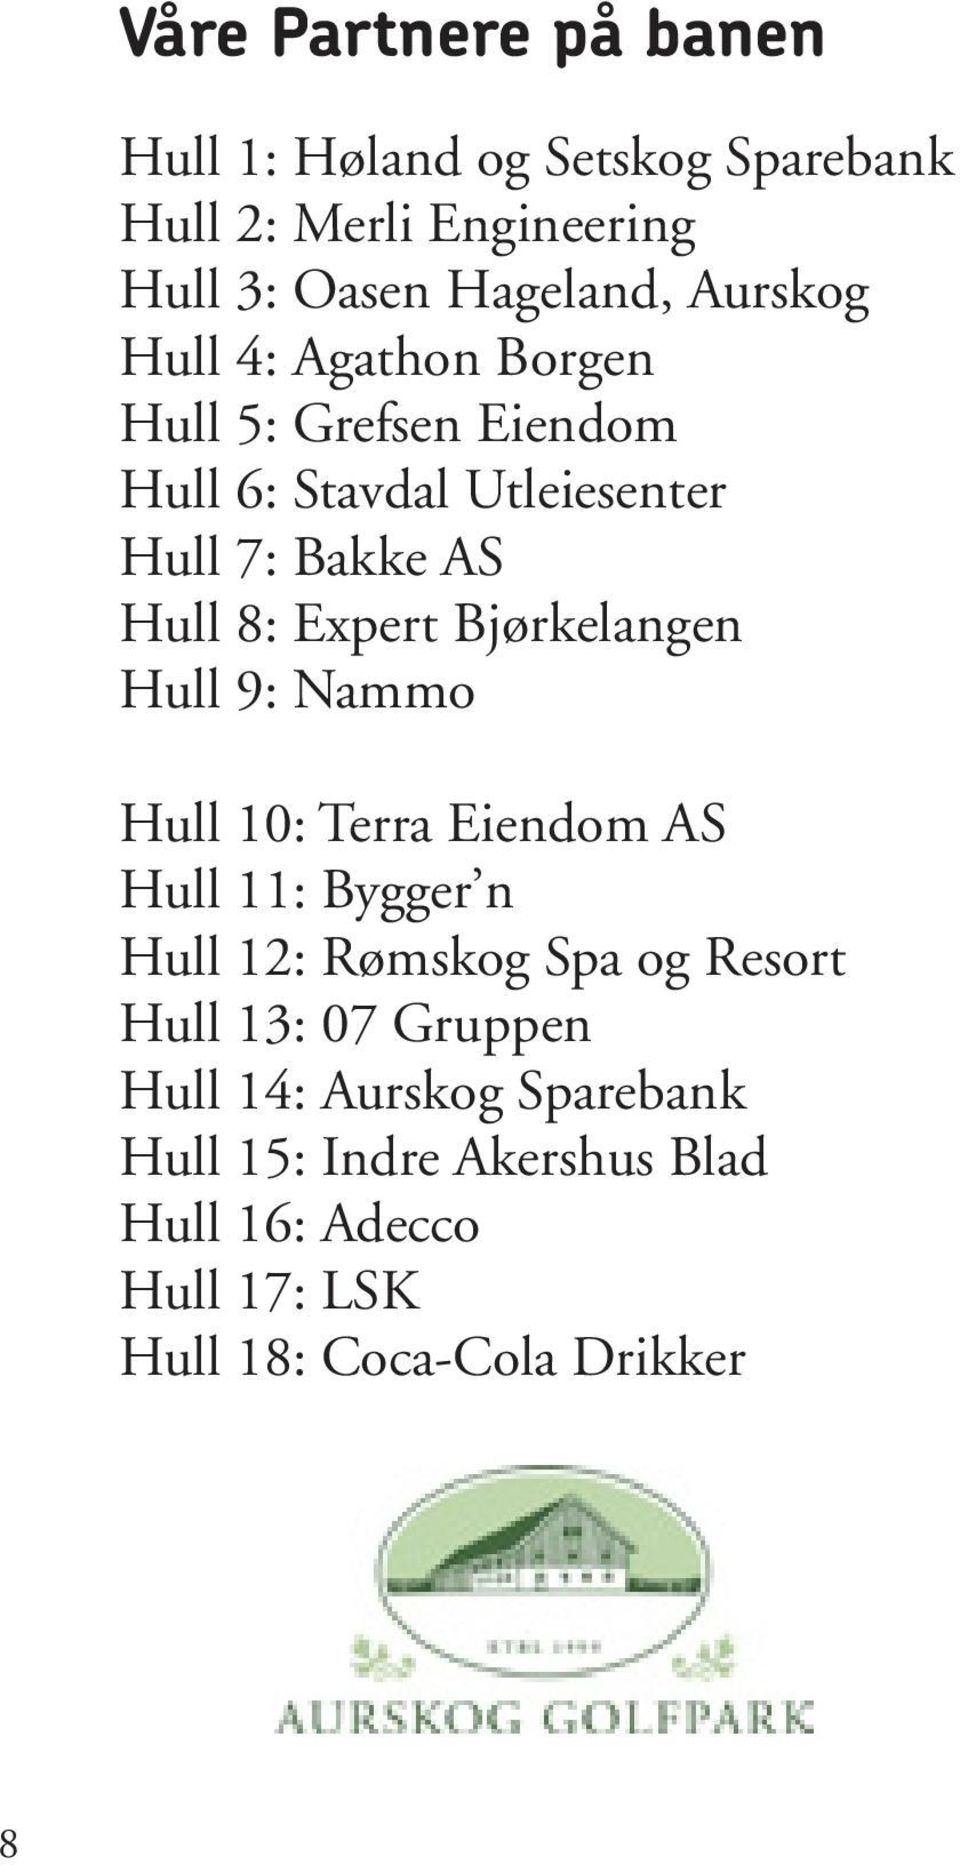 Bjørkelangen Hull 9: Nammo HUL 5 Hull 10: Terra Eiendom AS Hull 11: Bygger n Hull 12: Rømskog Spa og Resort Hull